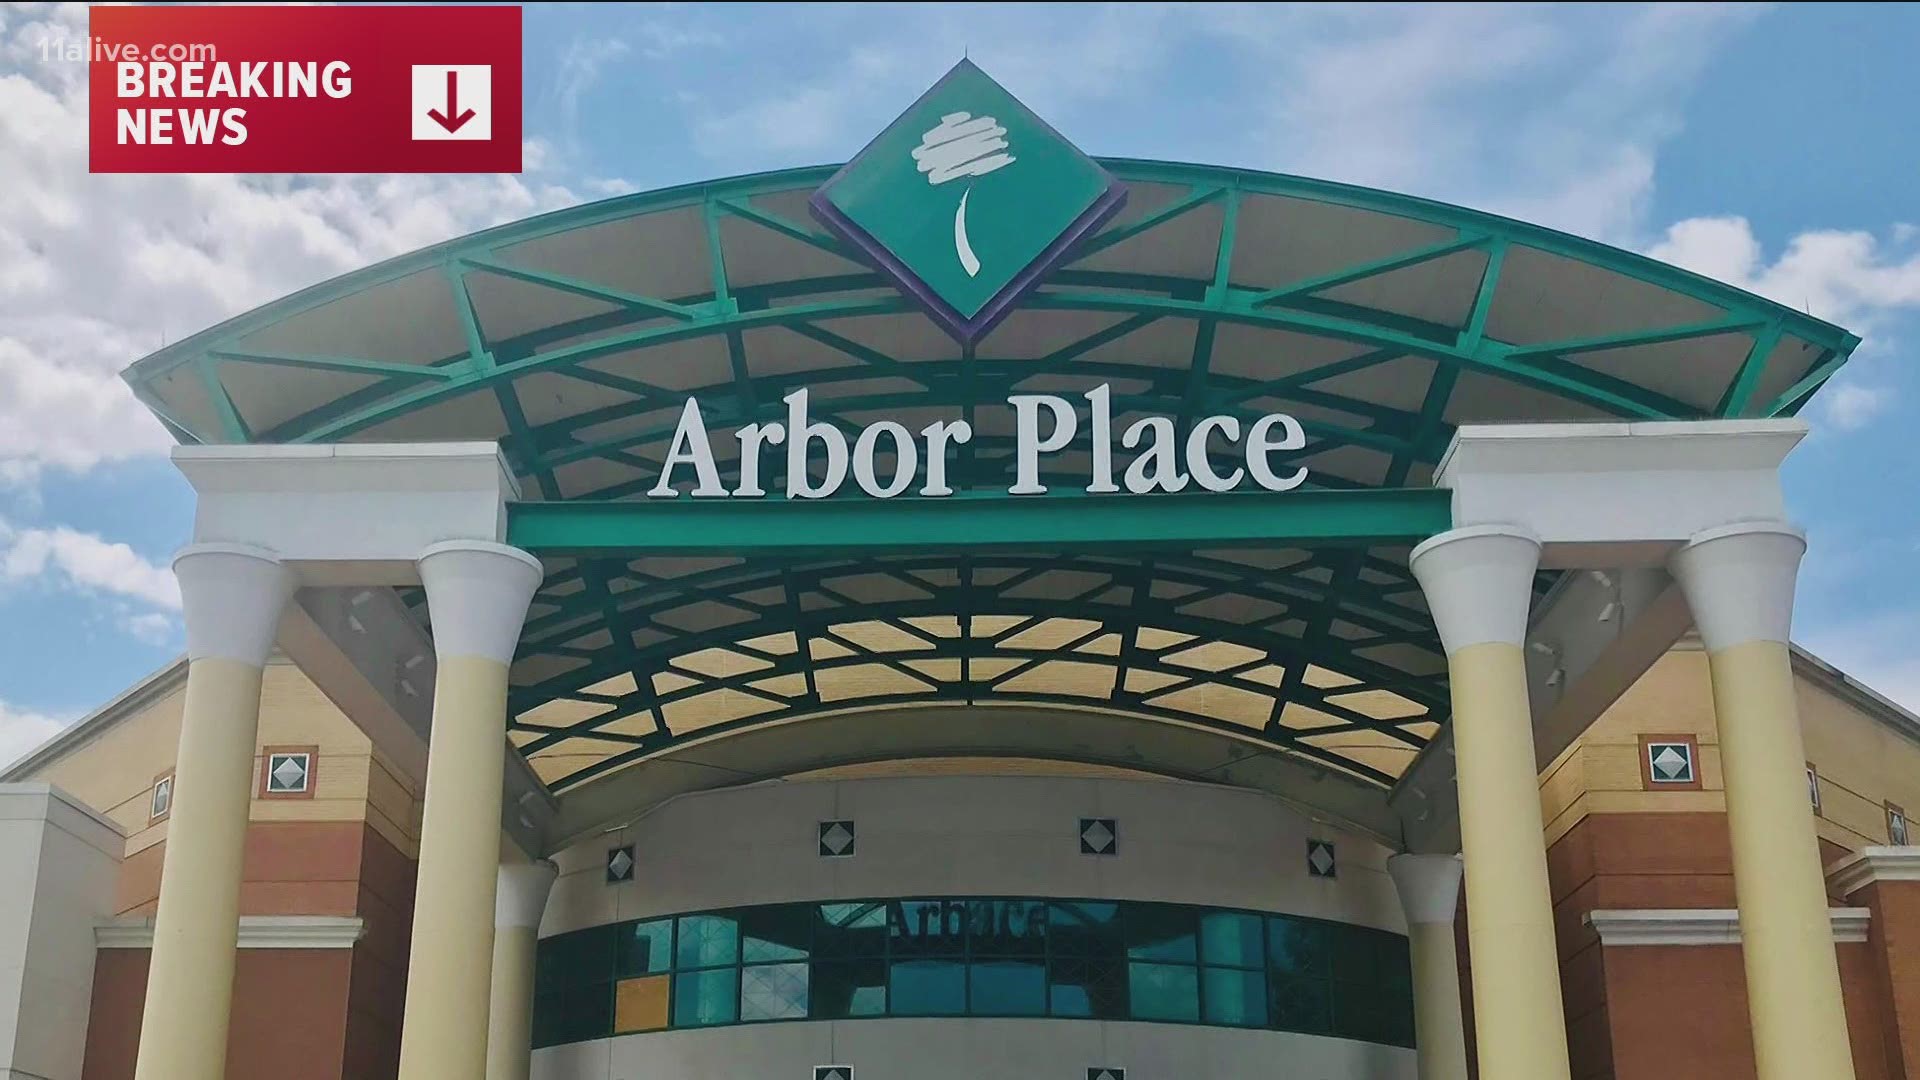 Arbor Place Mall shooting, Saturday No gunshot victims